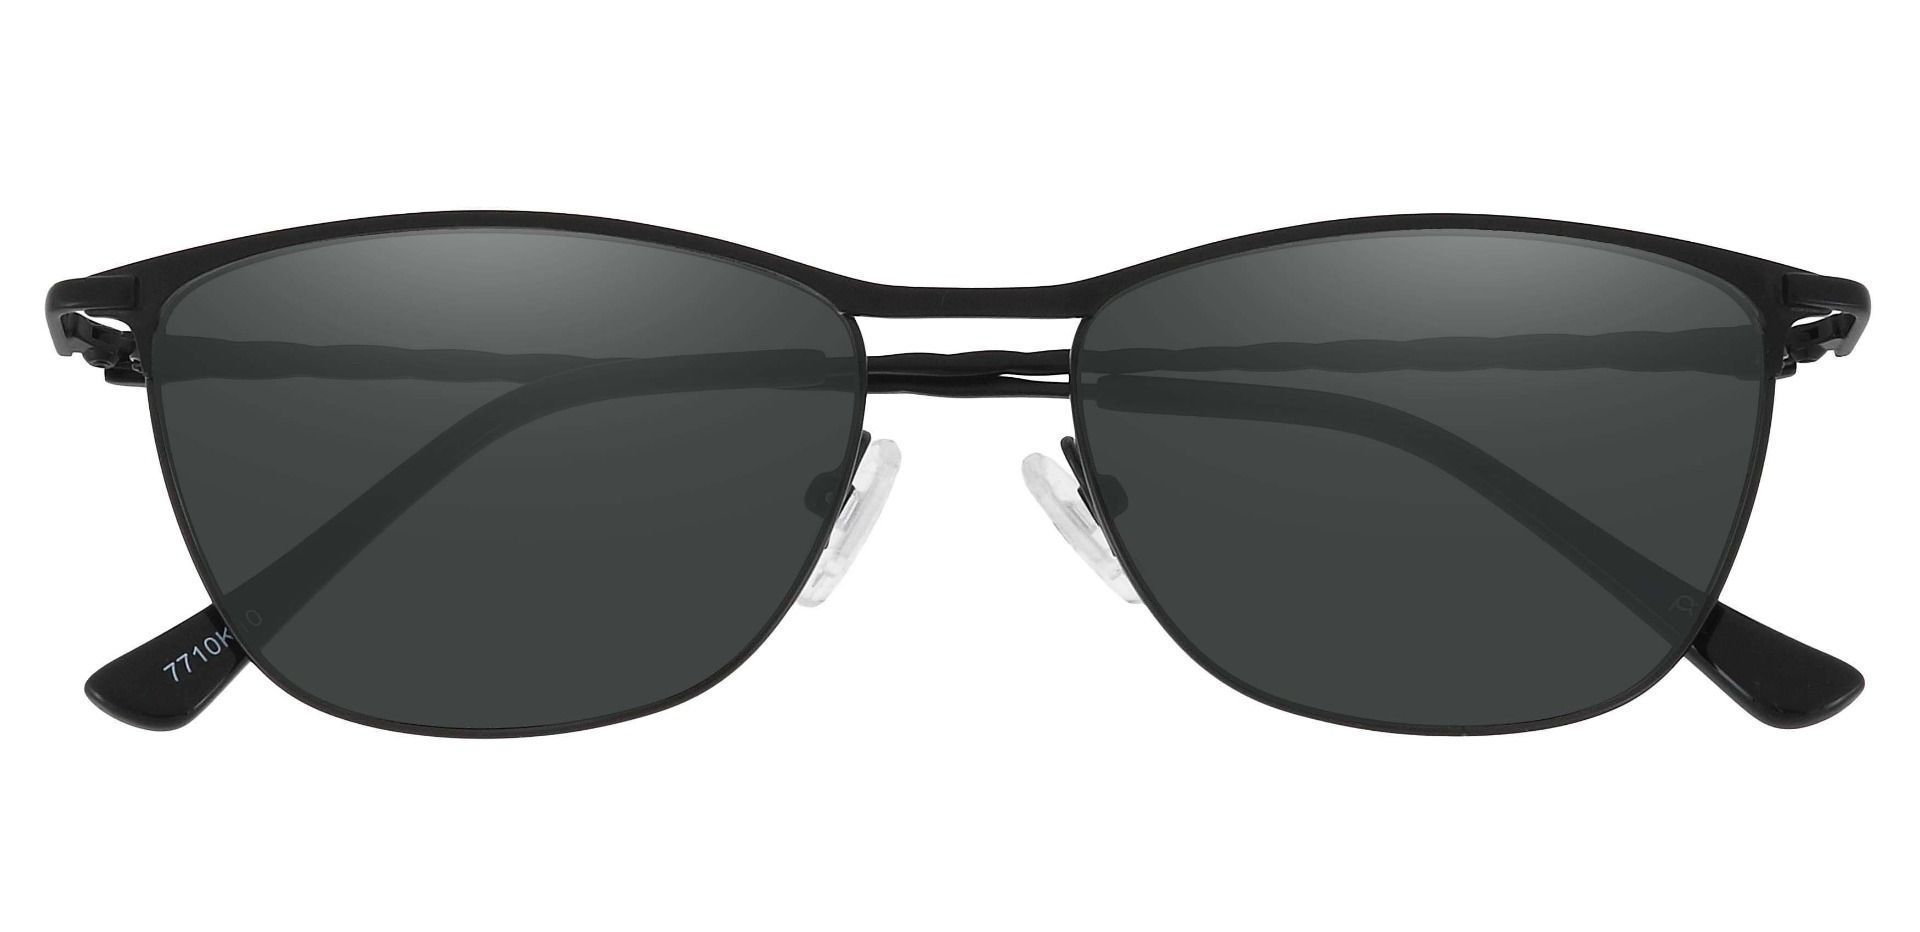 Andrea Cat Eye Progressive Sunglasses - Black Frame With Gray Lenses